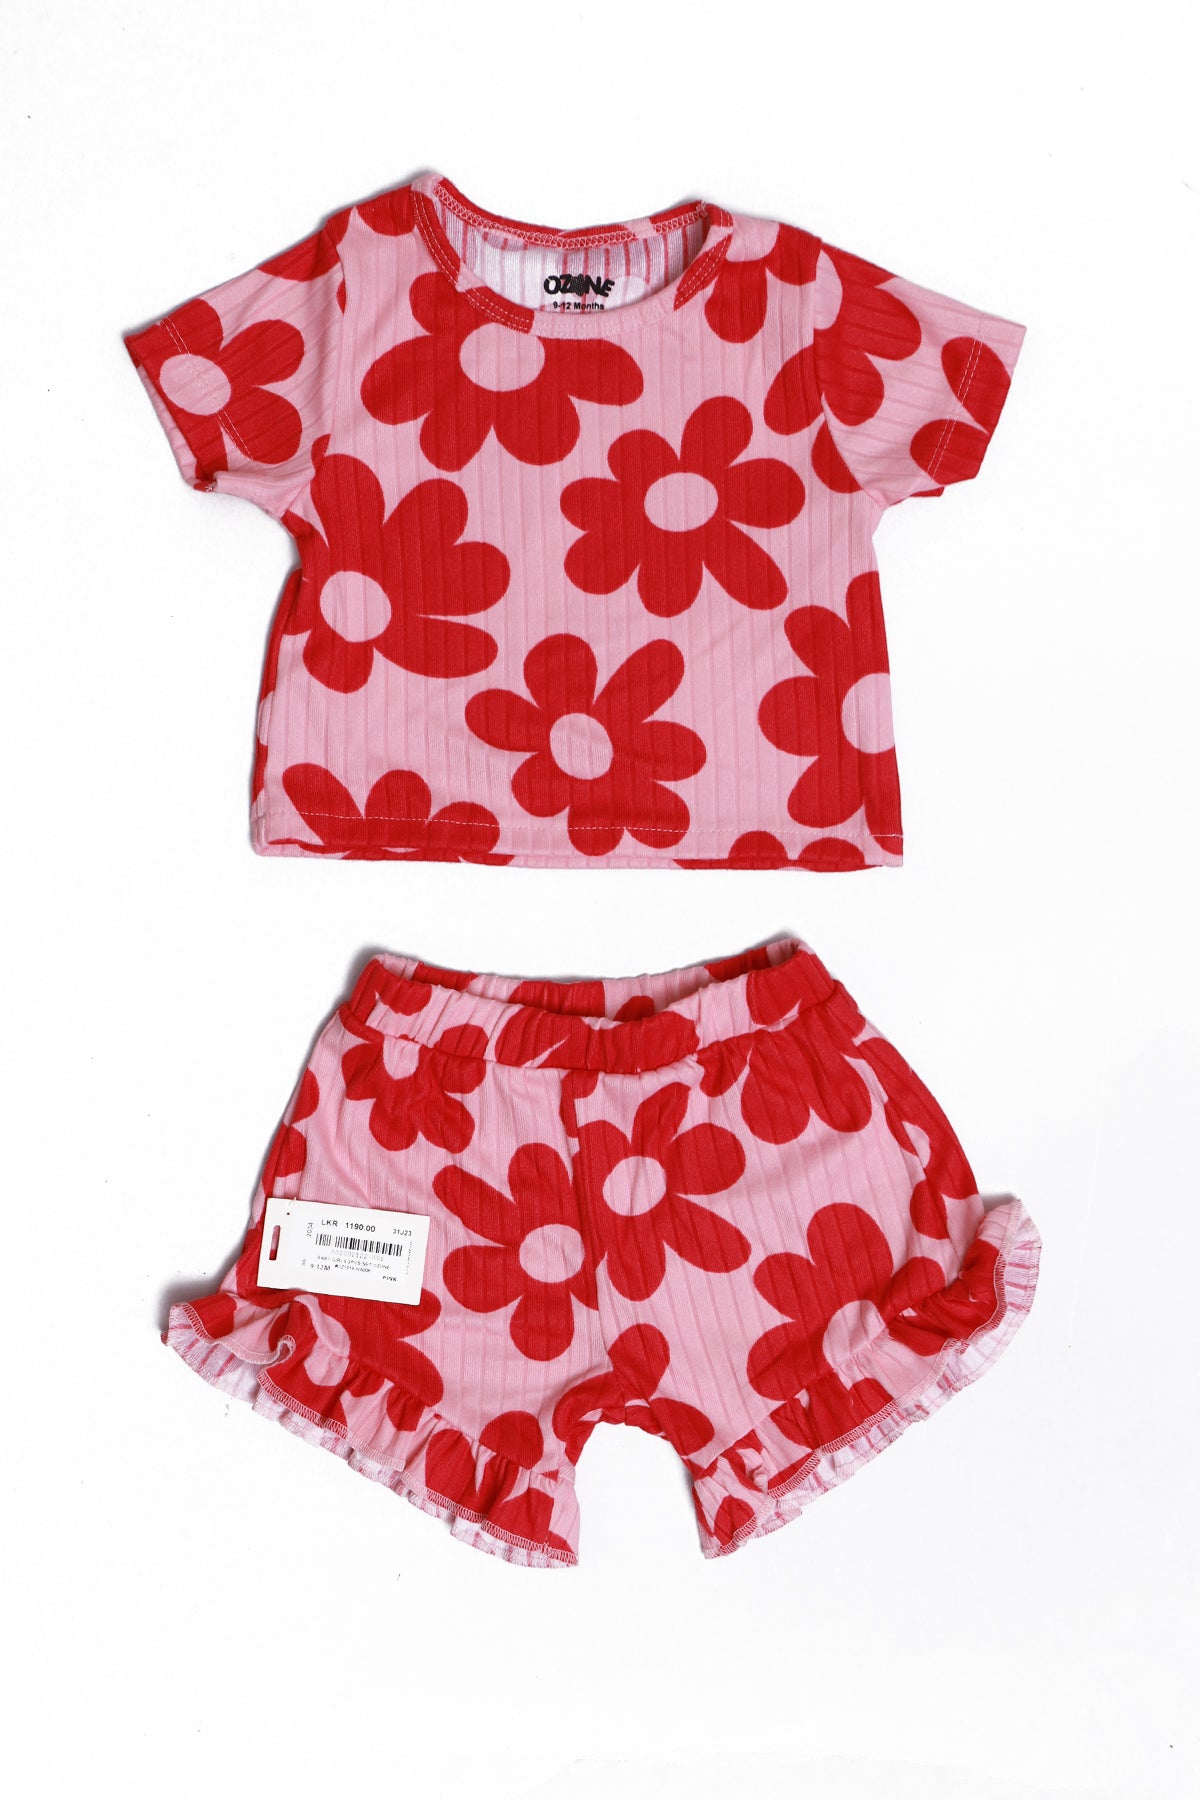 Ozone Baby  Girls Short Sleeve Printed 2Pcs Set